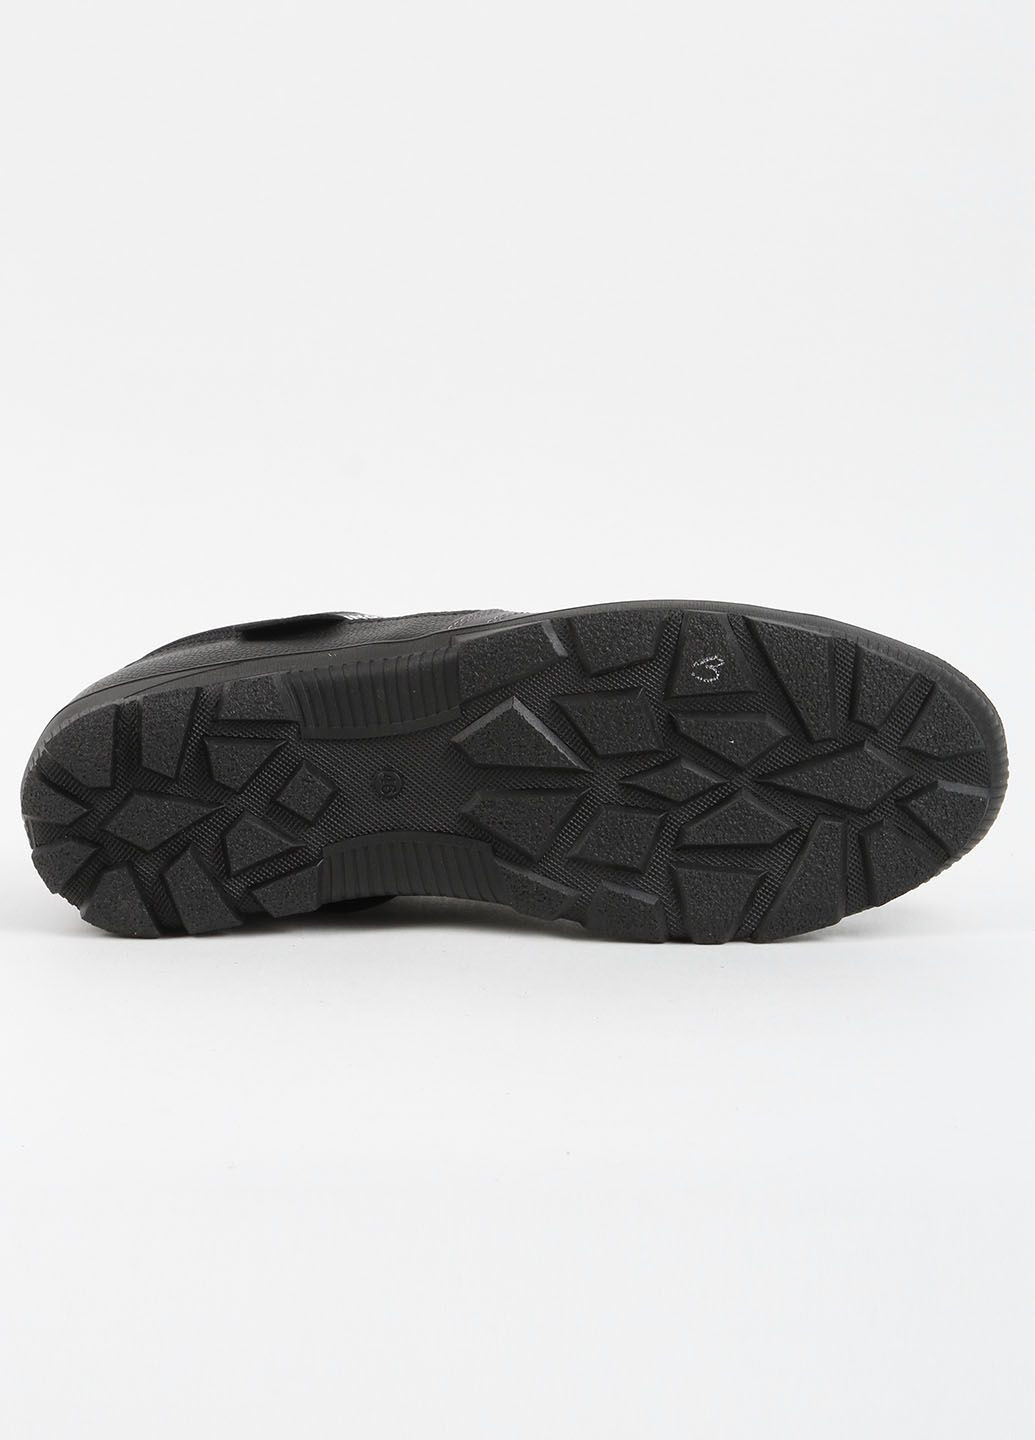 Черные кроссовки мужские кожаные 339603 Power